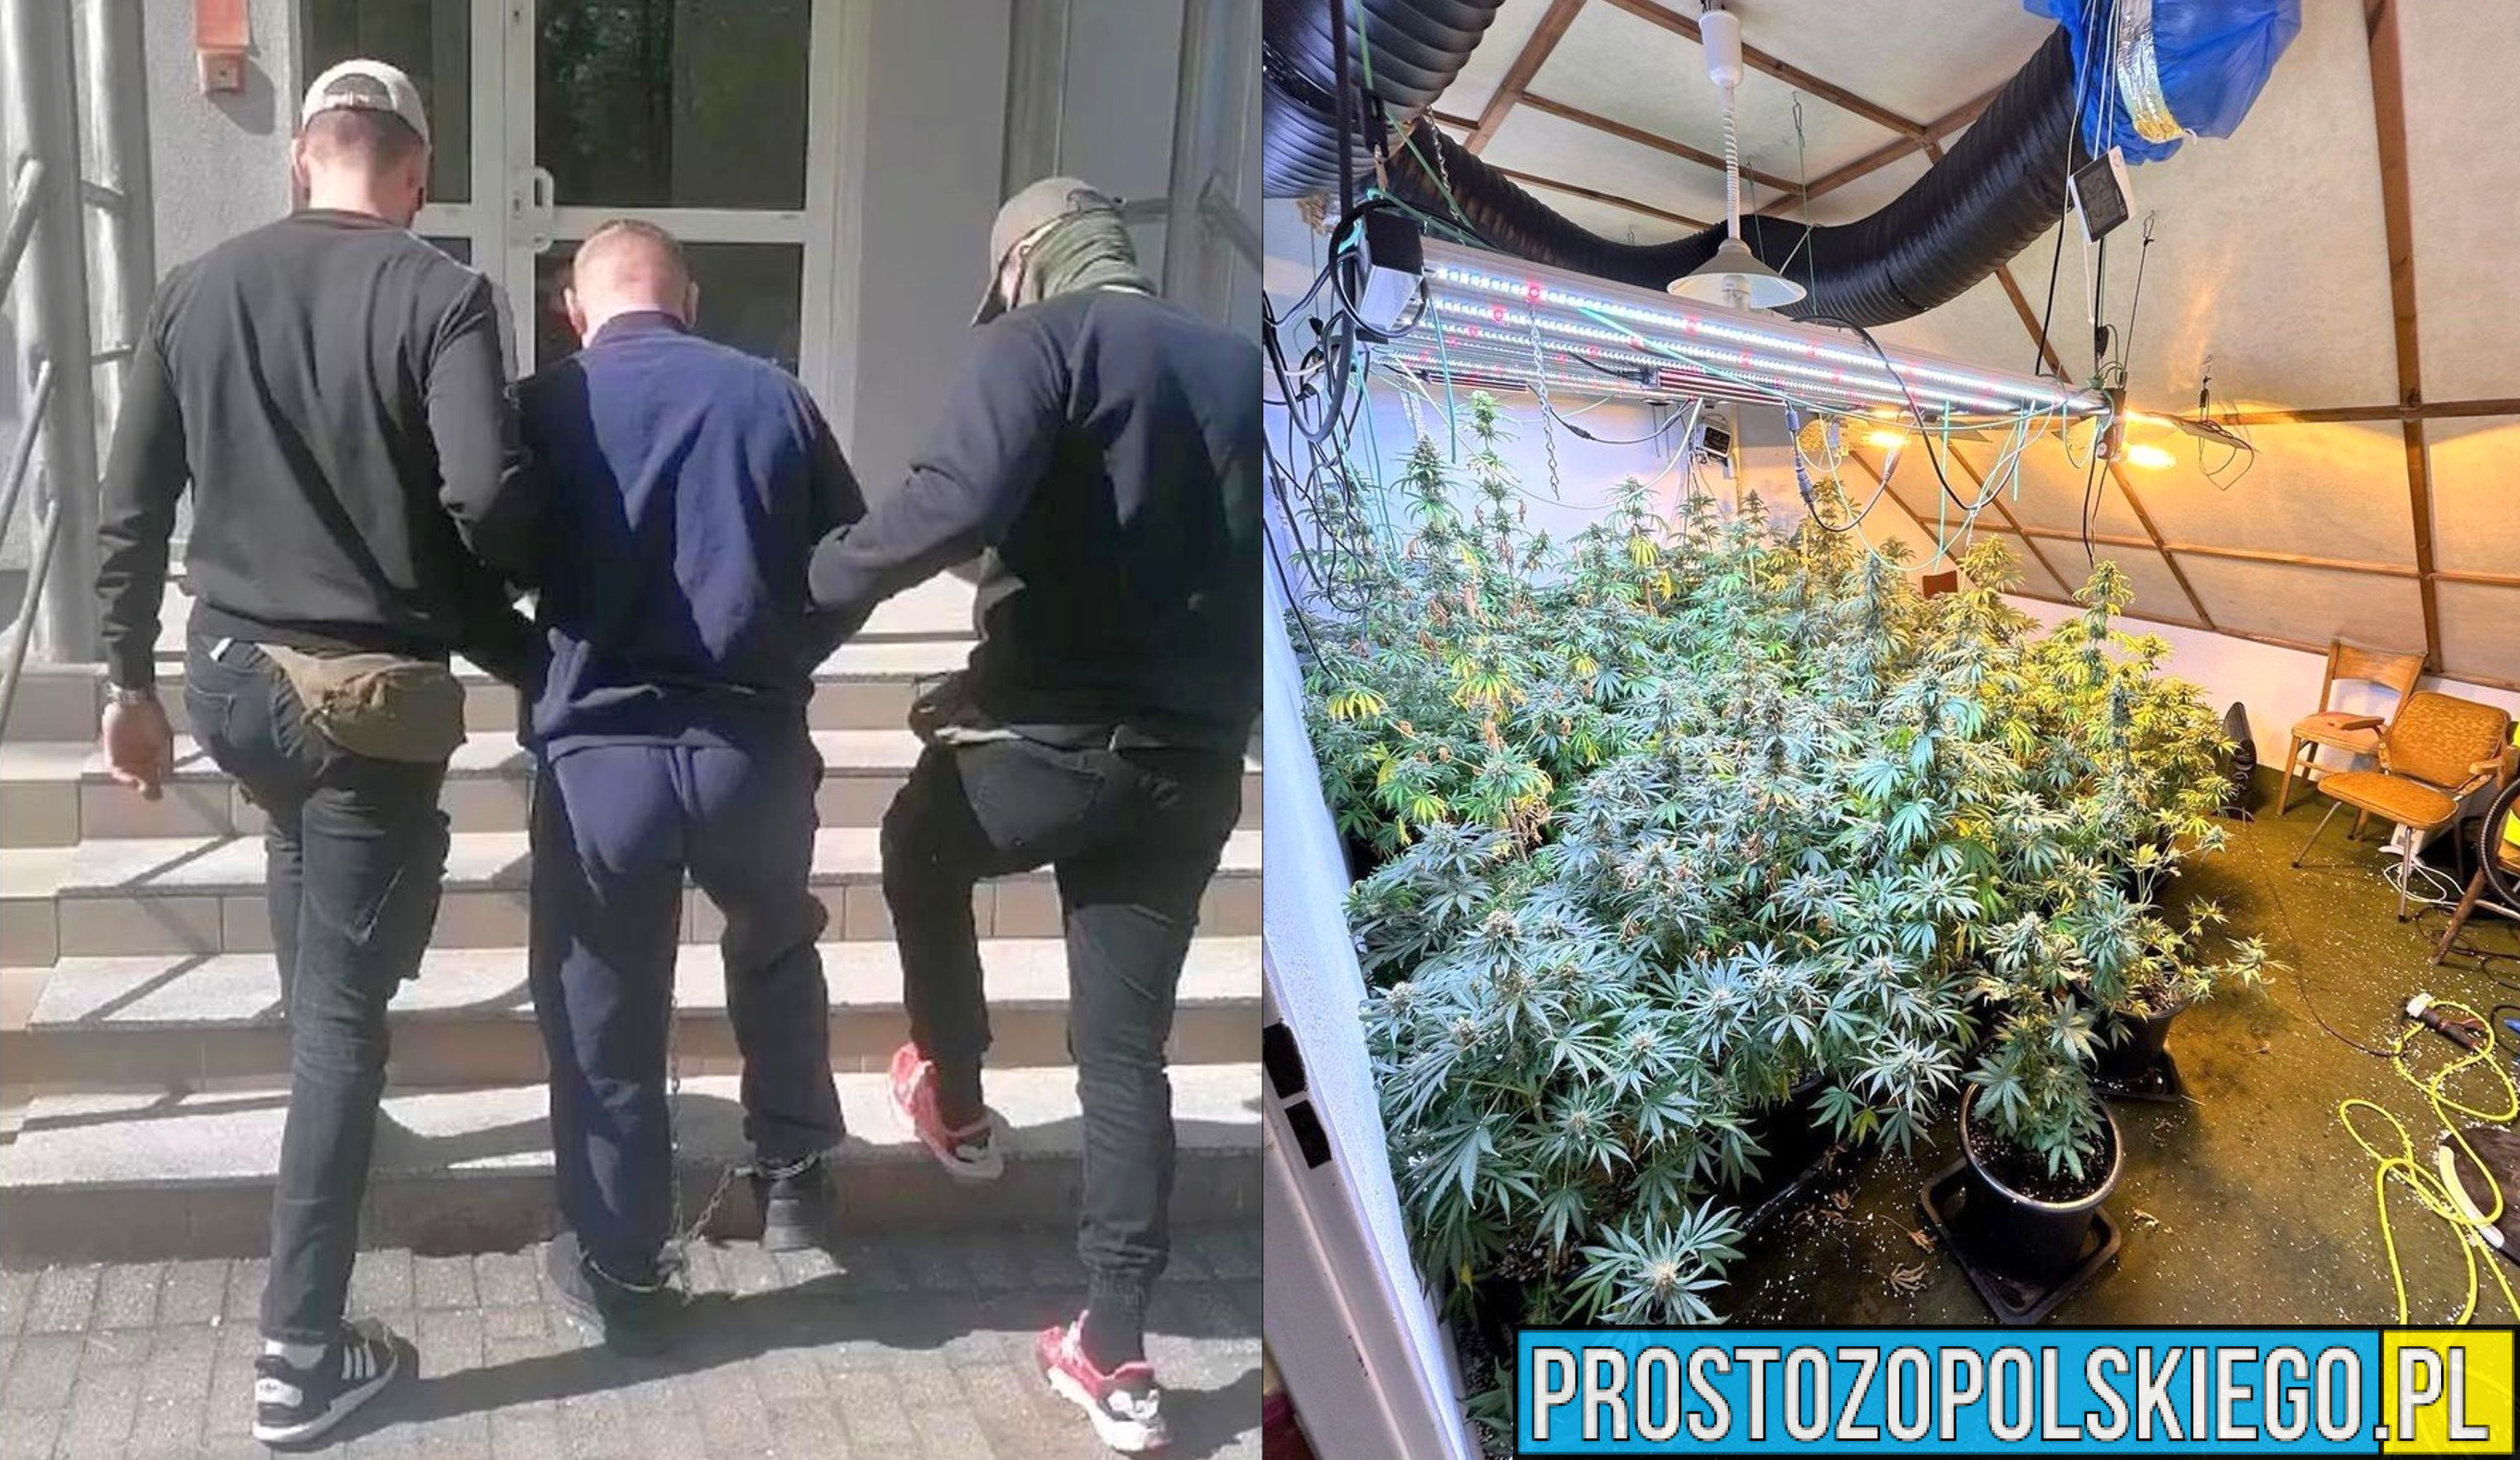 Policjanci zatrzymali dwóch mężczyzn w wieku 29 i 36 lat, którzy zajmowali się przemycaniem narkotyków z terytorium Królestwa Niderlandów na teren RP.